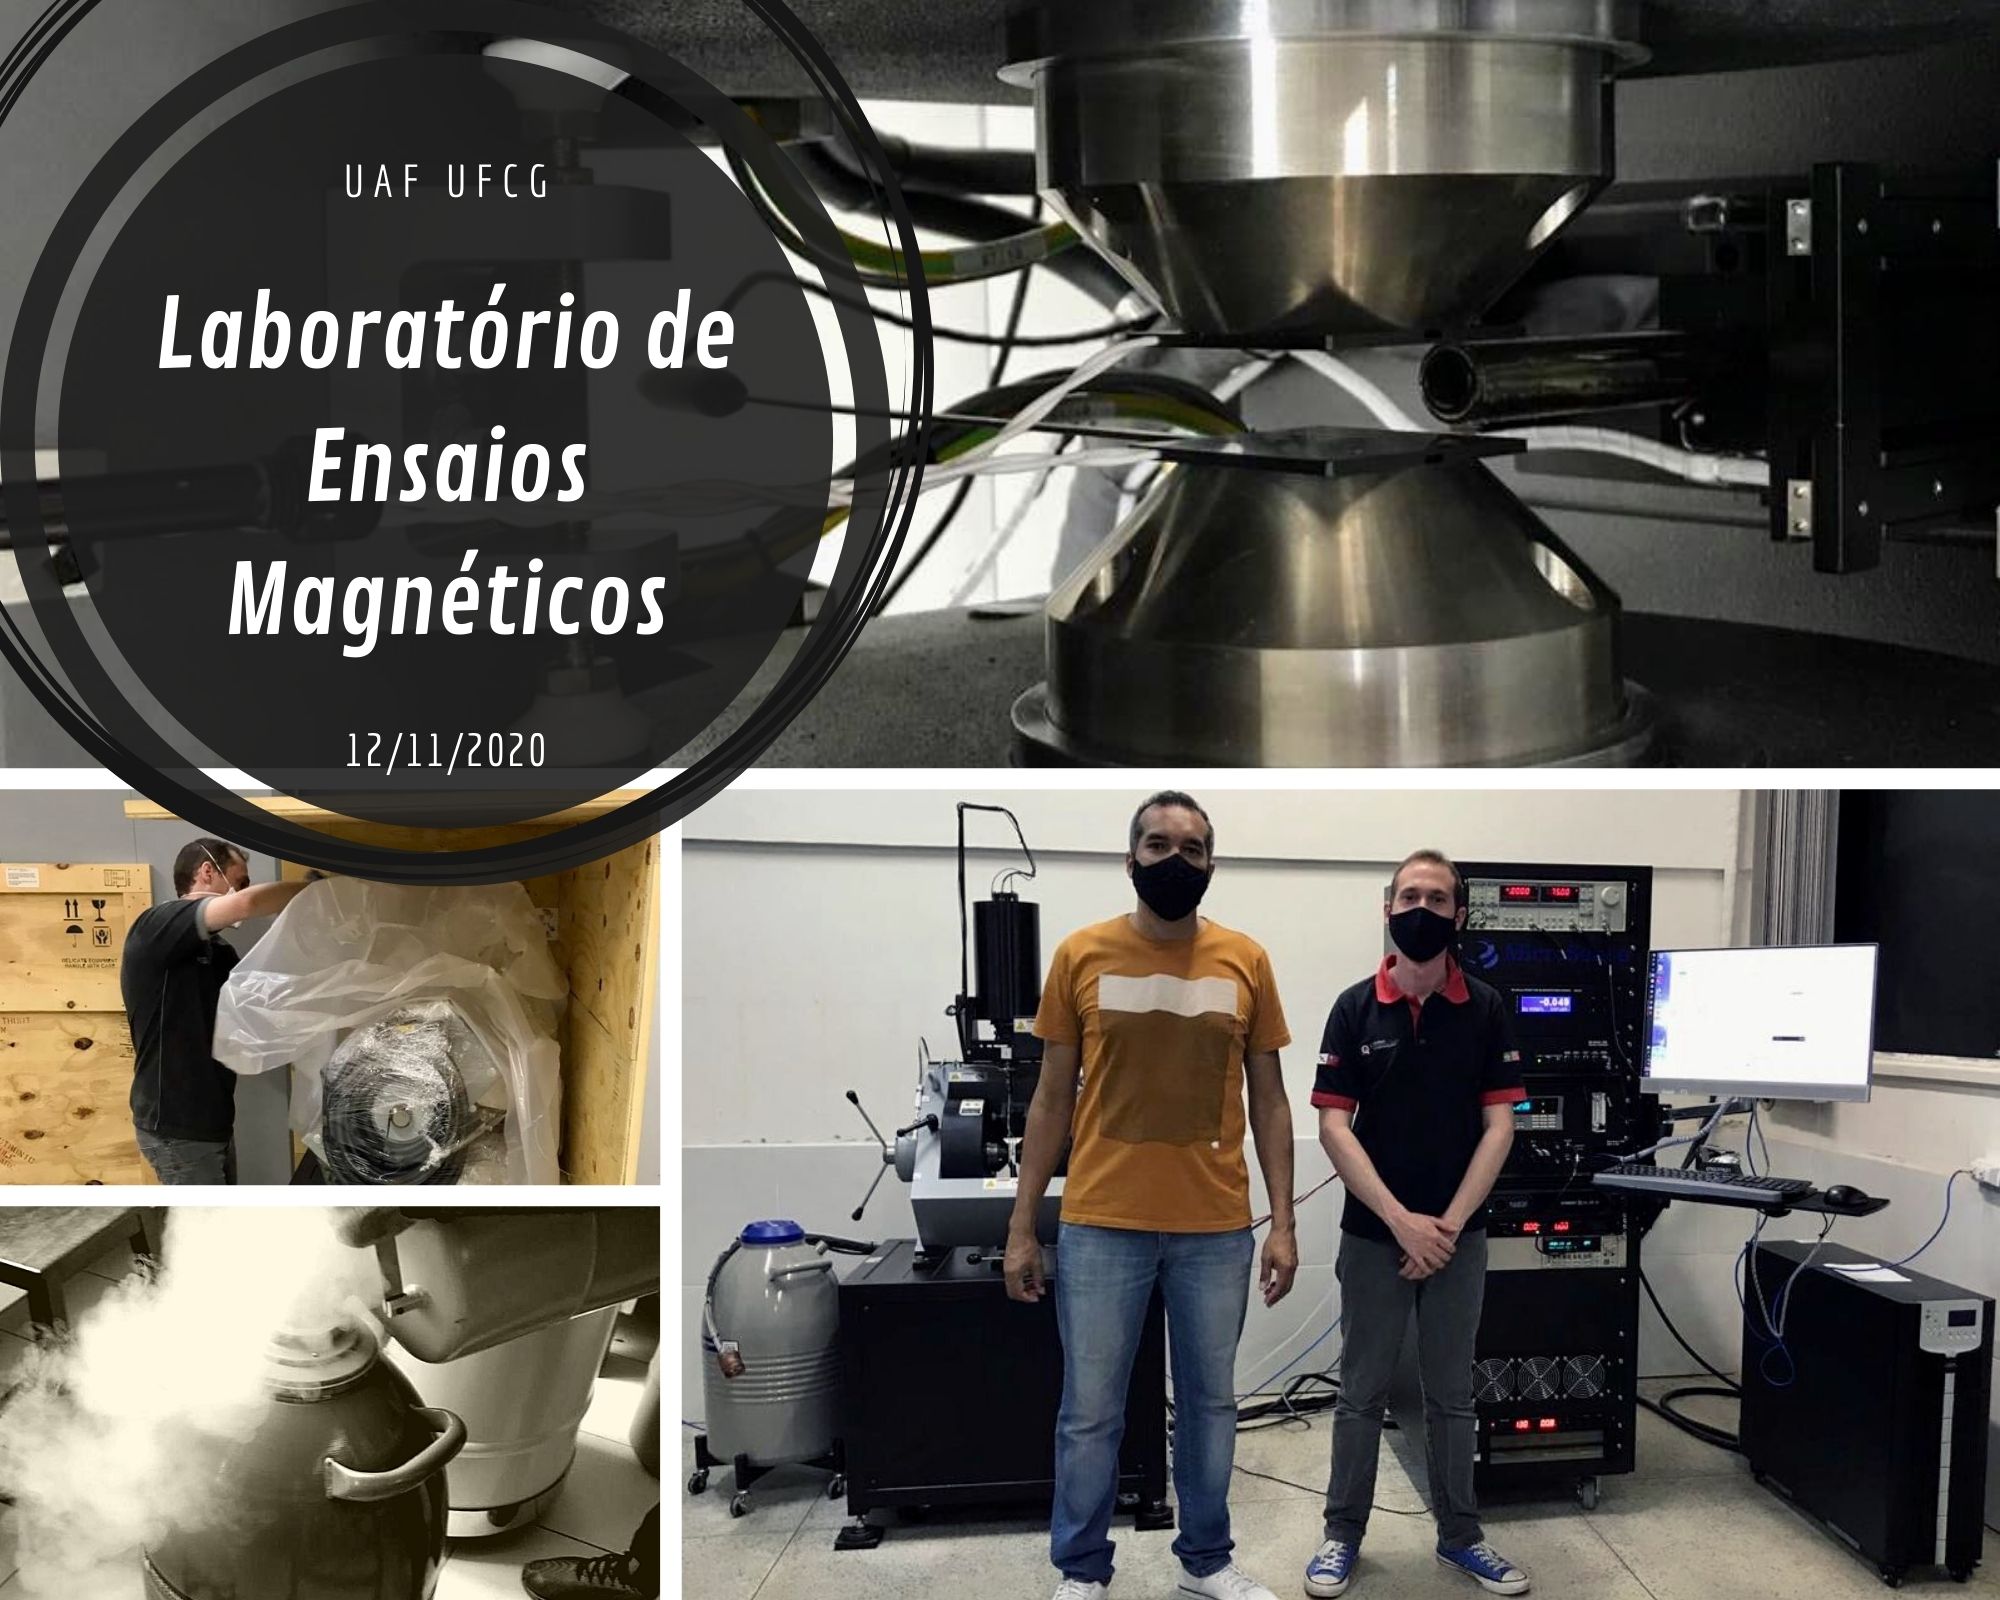 Laboratório de Ensaios Magneticos.jpg